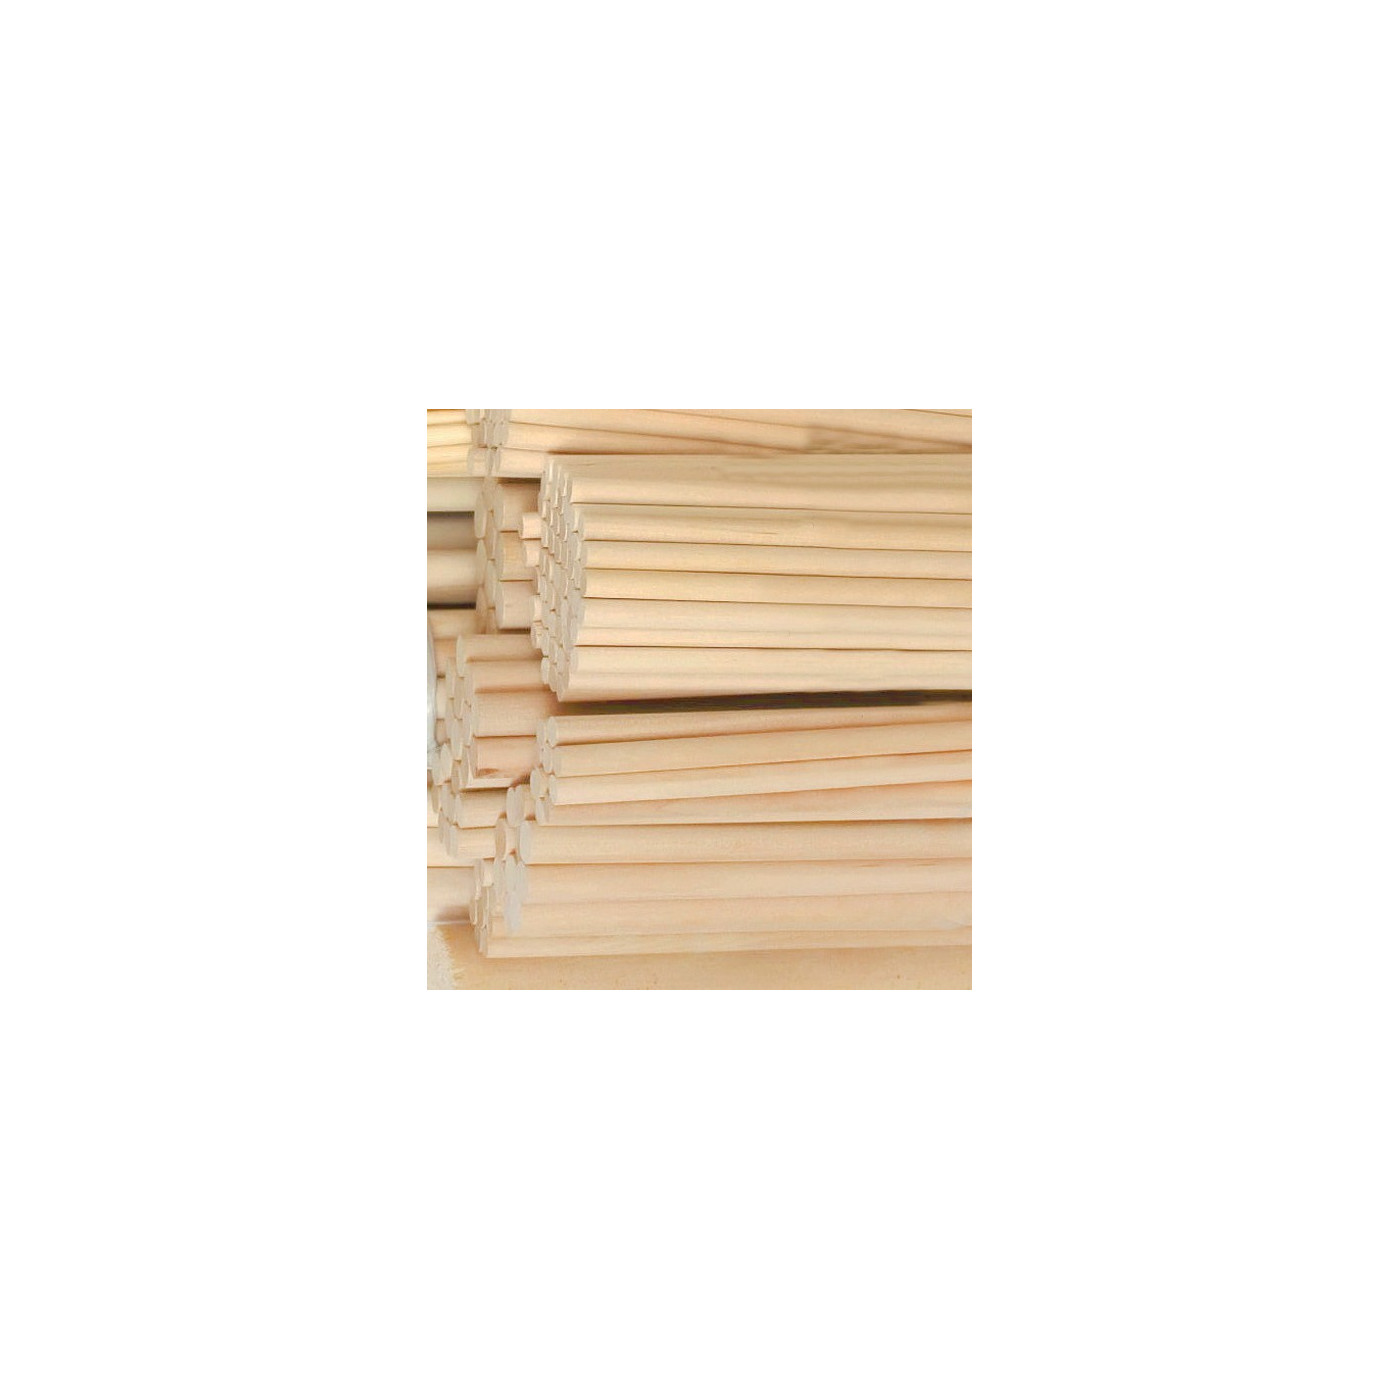 Juego de 100 palos de madera (20 cm de longitud, 9,5 mm de